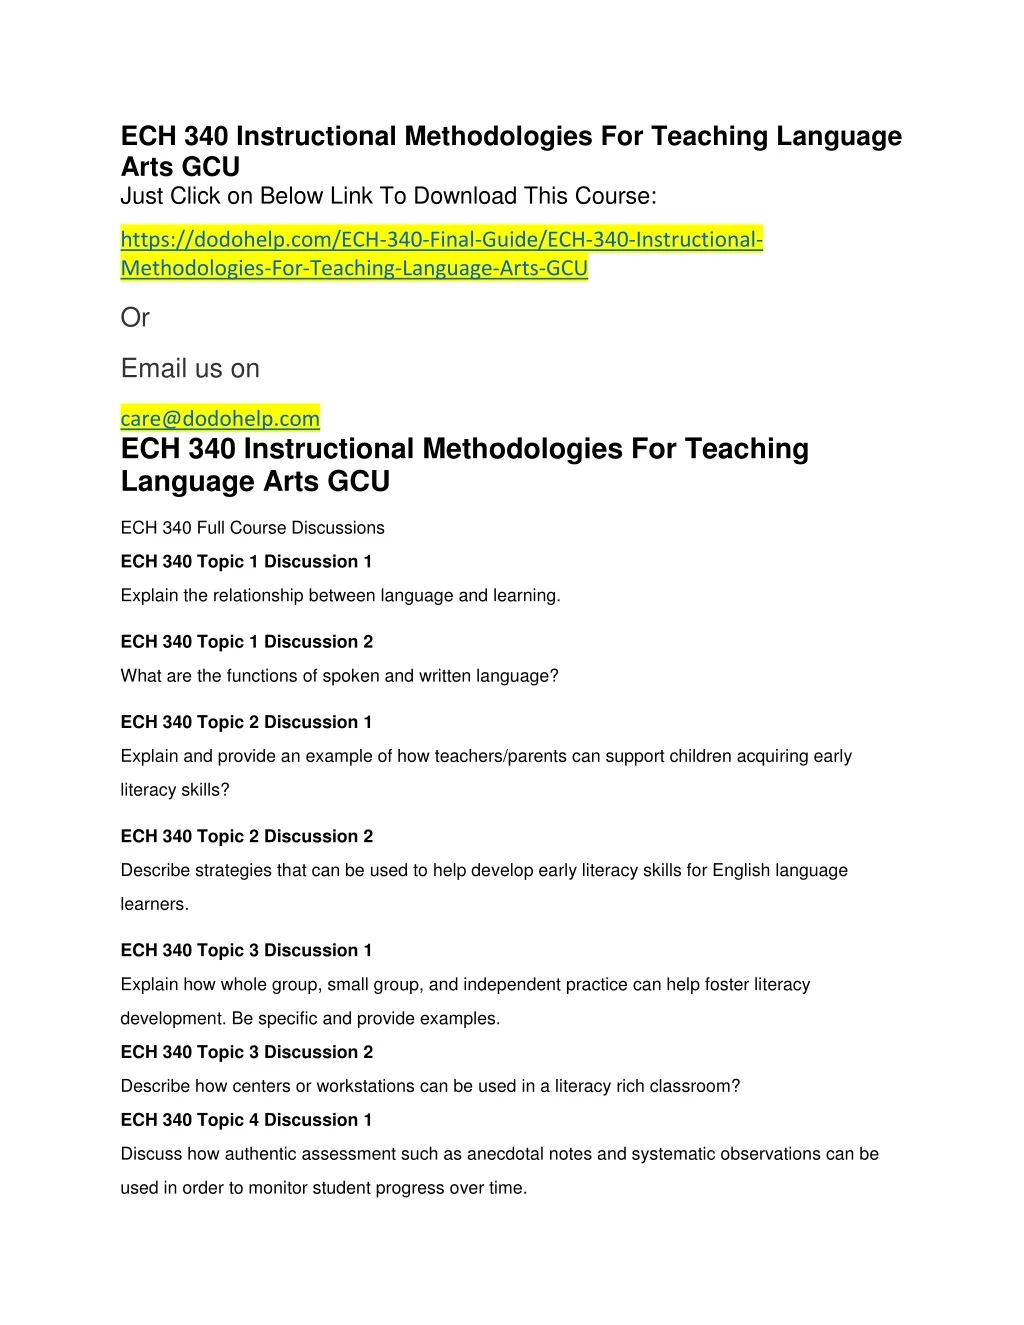 ech 340 instructional methodologies for teaching